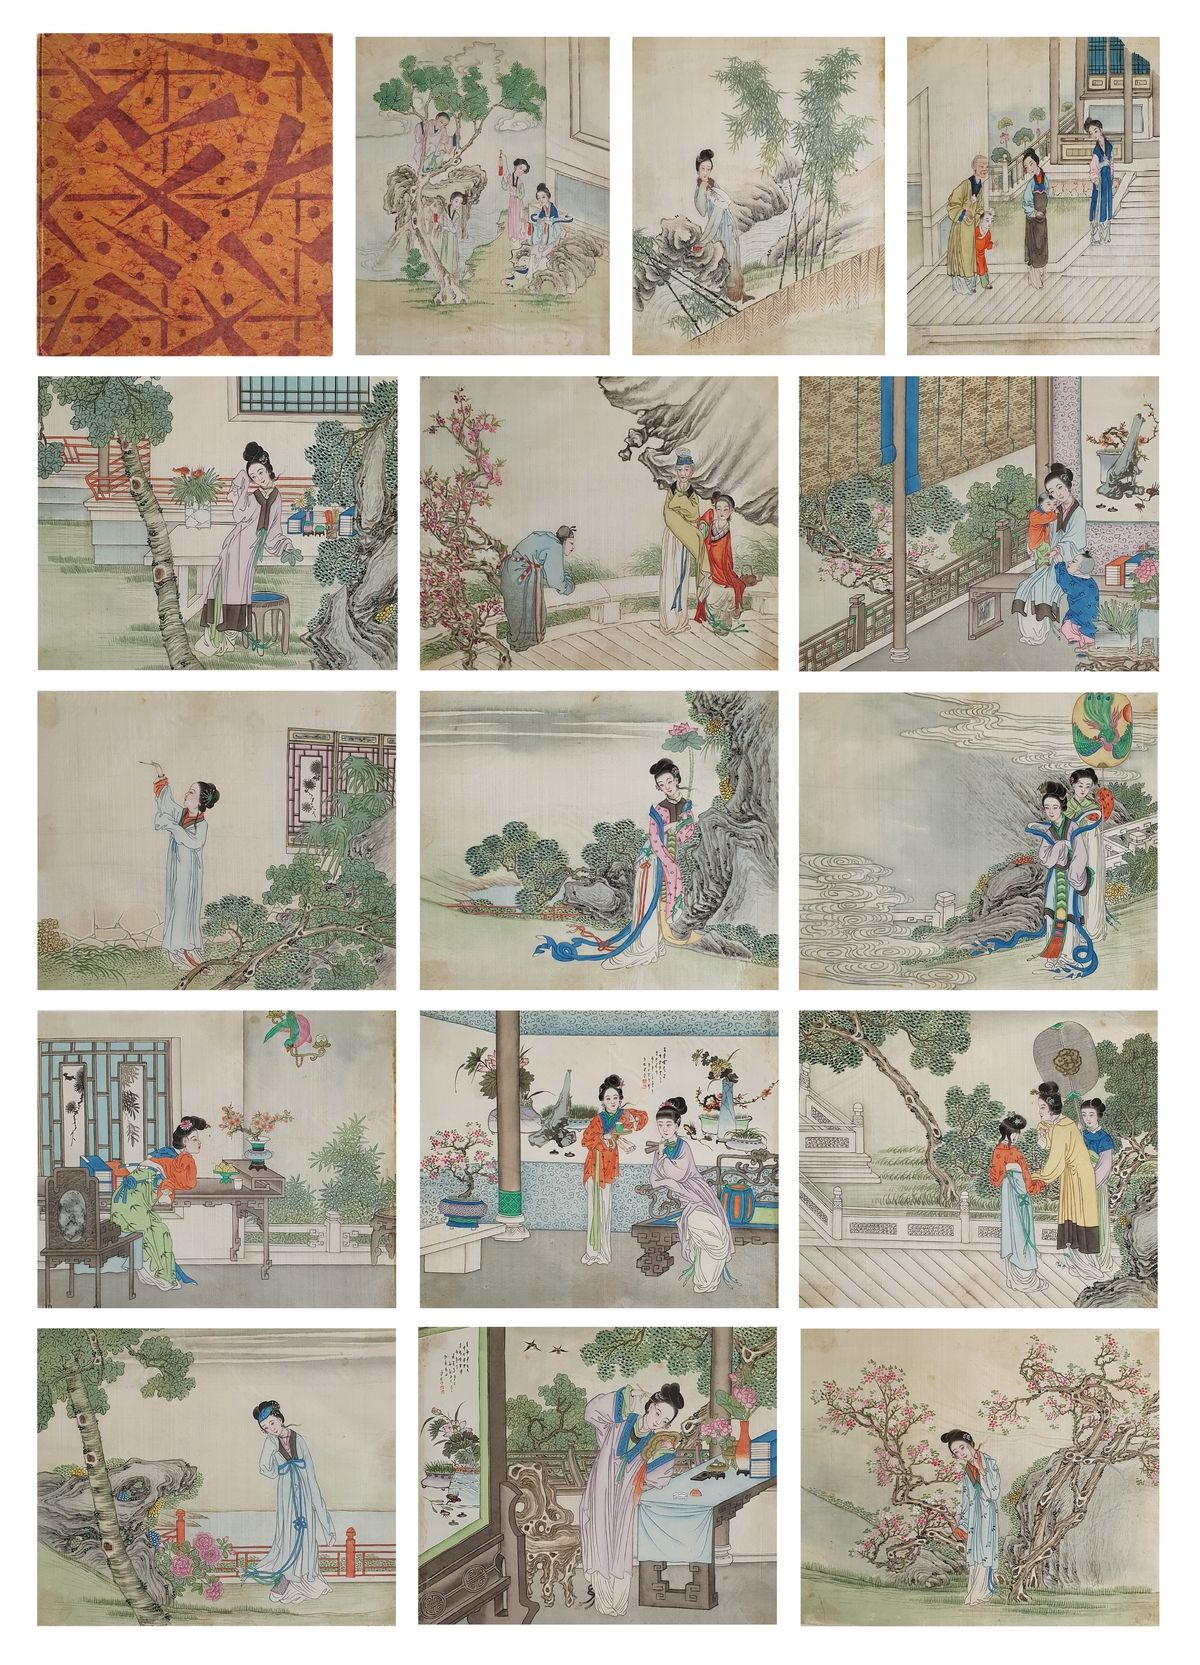 CHINE ca.1900 Scenes of life
Portfolio containing 15 tempera paintings on silk p&hellip;